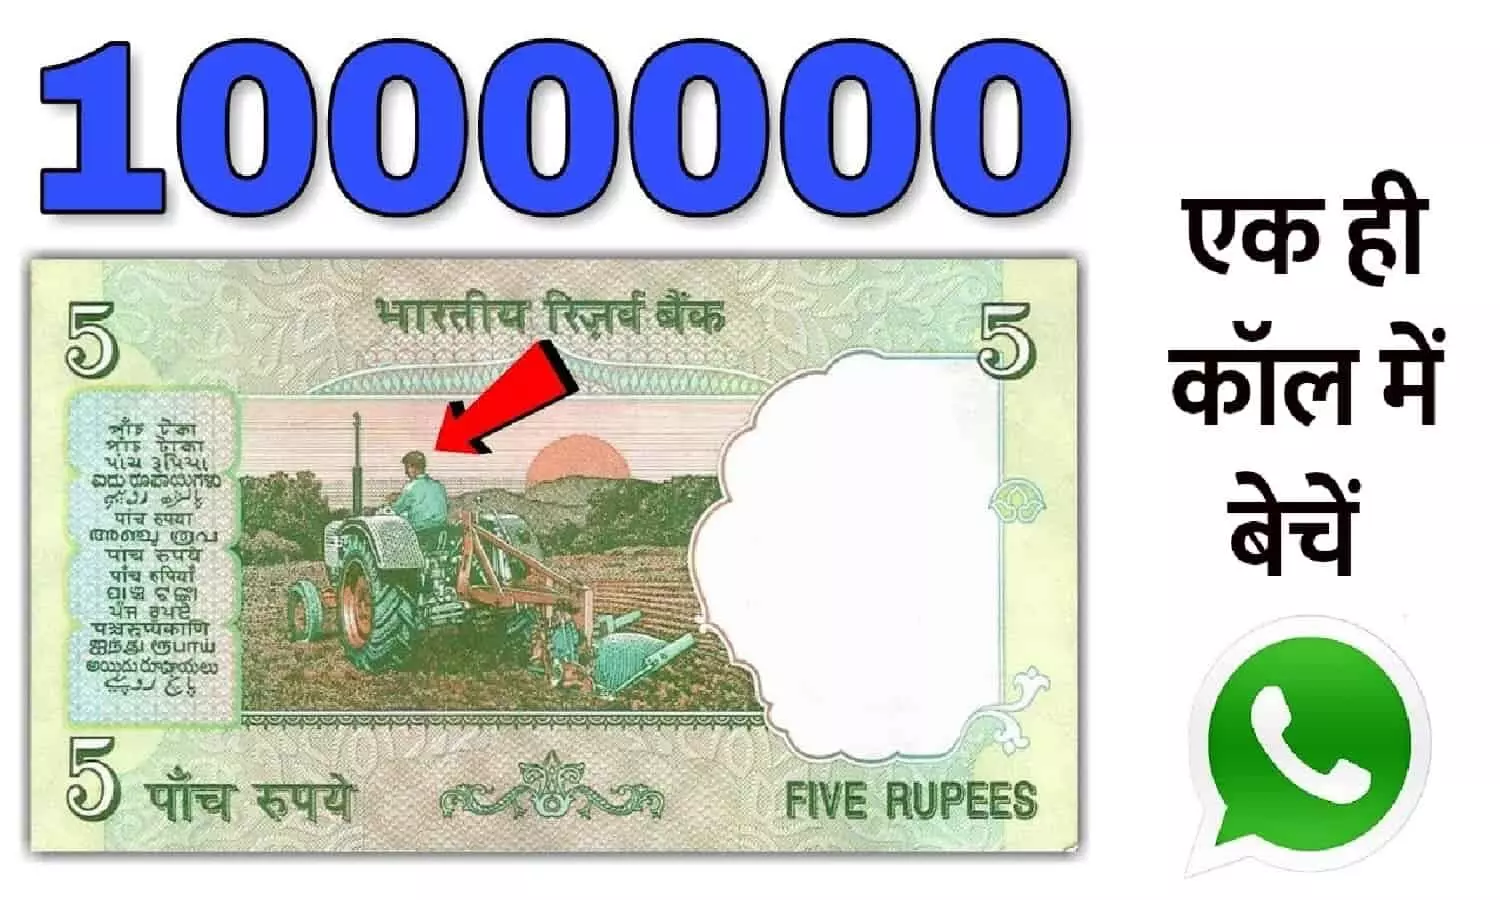 नए साल 1 जनवरी 2023 के पहले बनना है अमीर तो तिजोरी से निकाल ले ये 5 रुपए की नोट